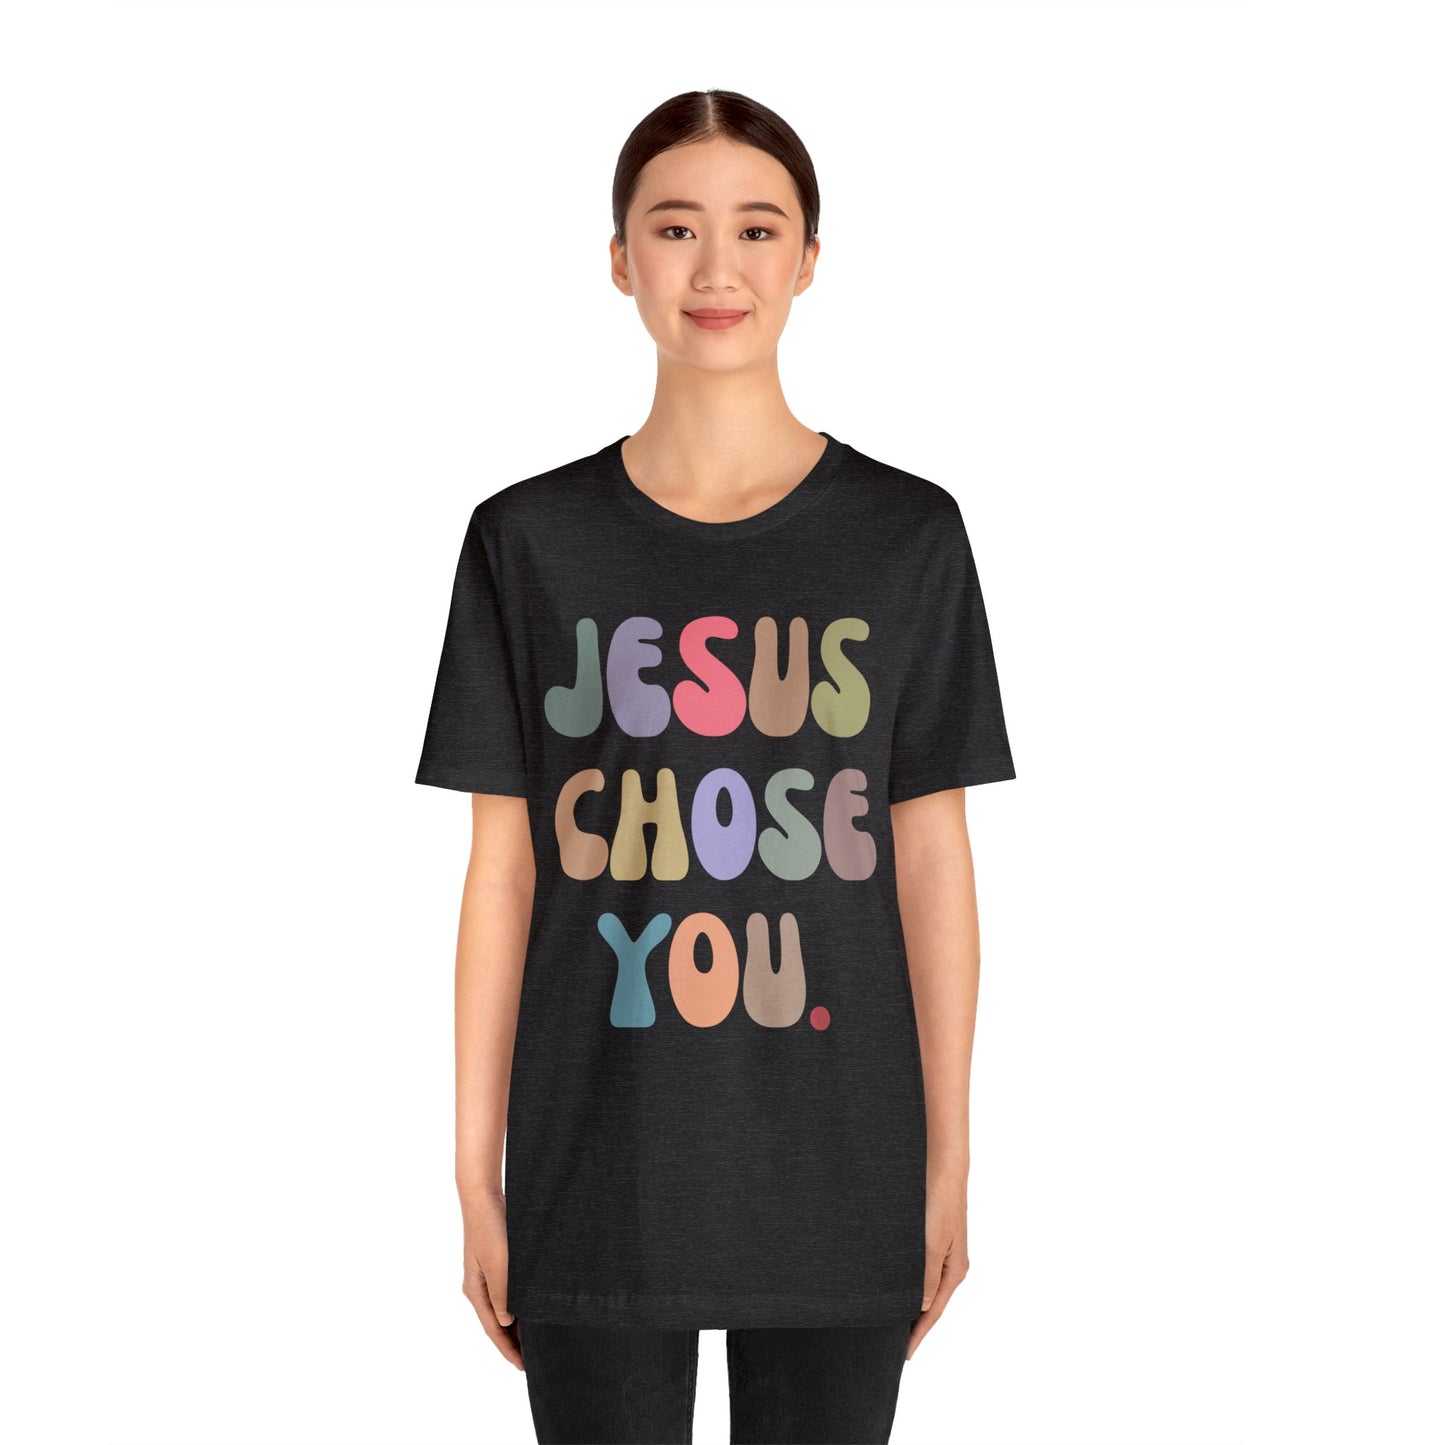 Jesus Chose You Shirt, Religious Women Shirt, Shirt for Mom, Christian Shirt for Mom, Jesus Lover Shirt, Godly Woman Shirt, T1229